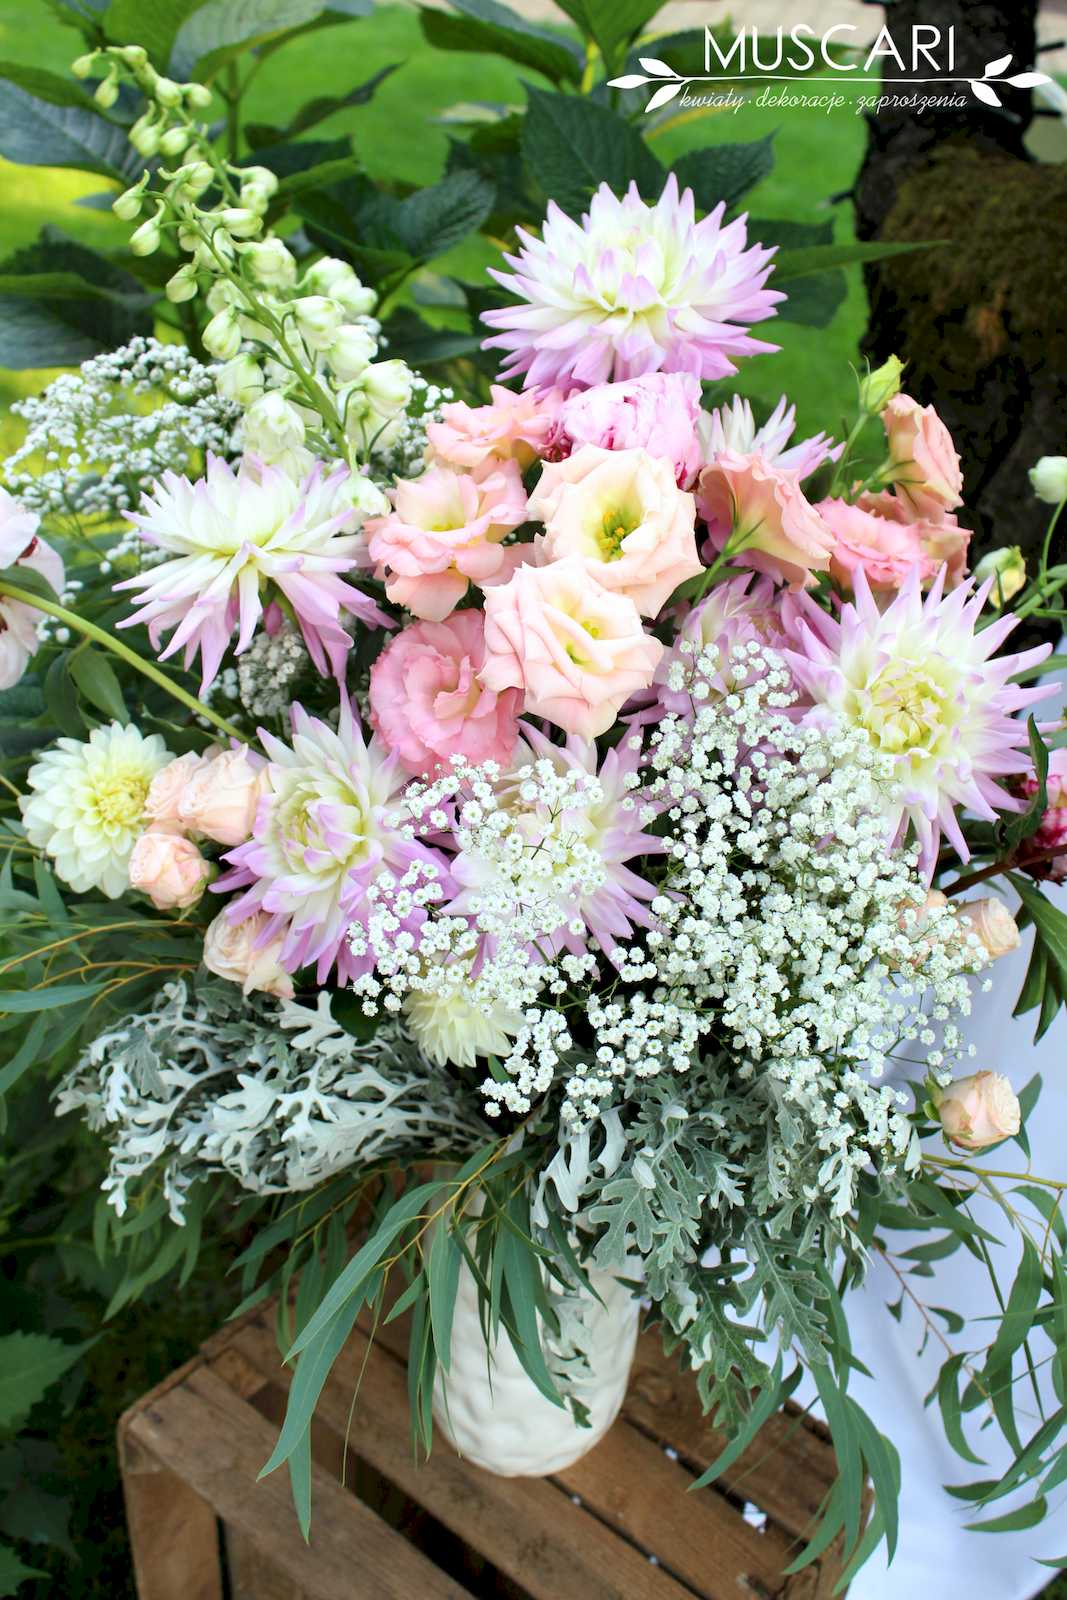 dalie, róże, eustomy i gipsówka w kompozycji w wazonie - ślub cywilny w ogrodzie